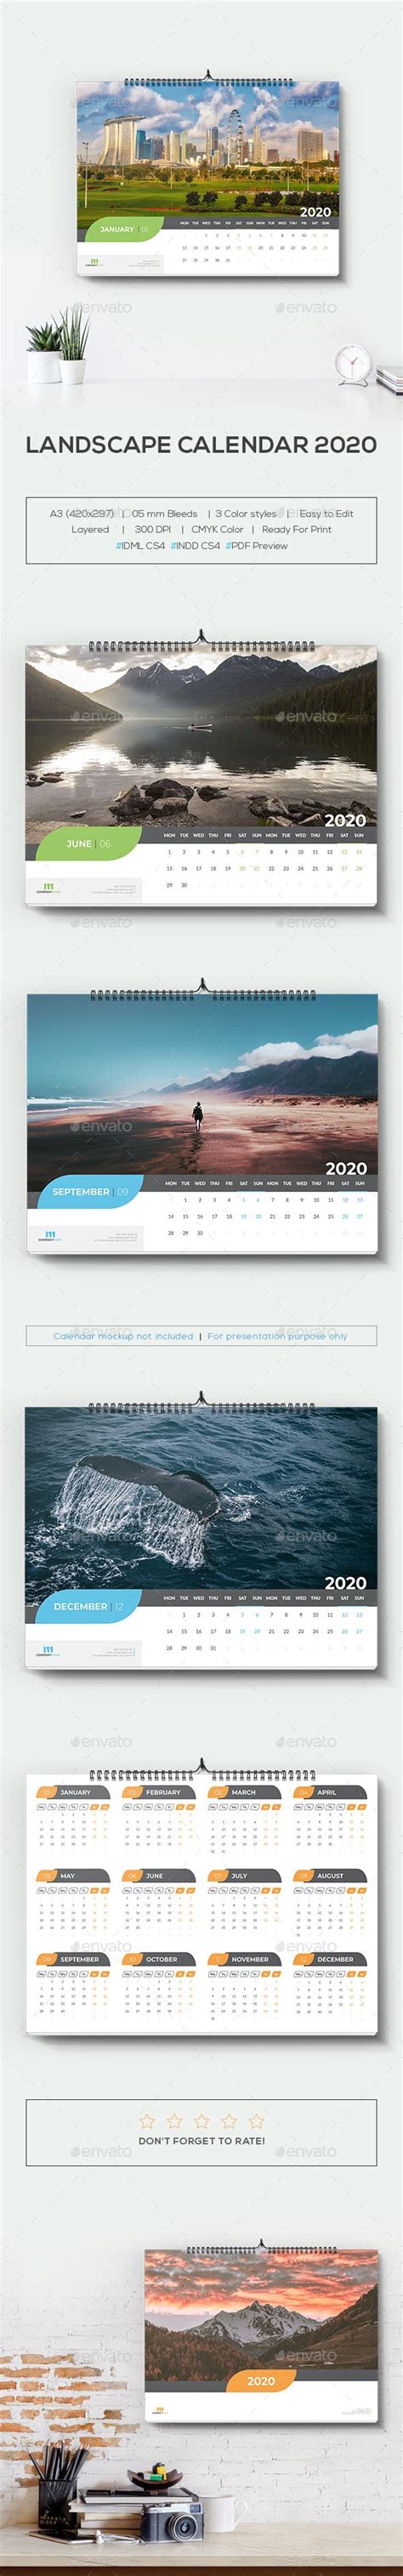 Landscape Calendar 2020 By Mstartwork Graphicriver